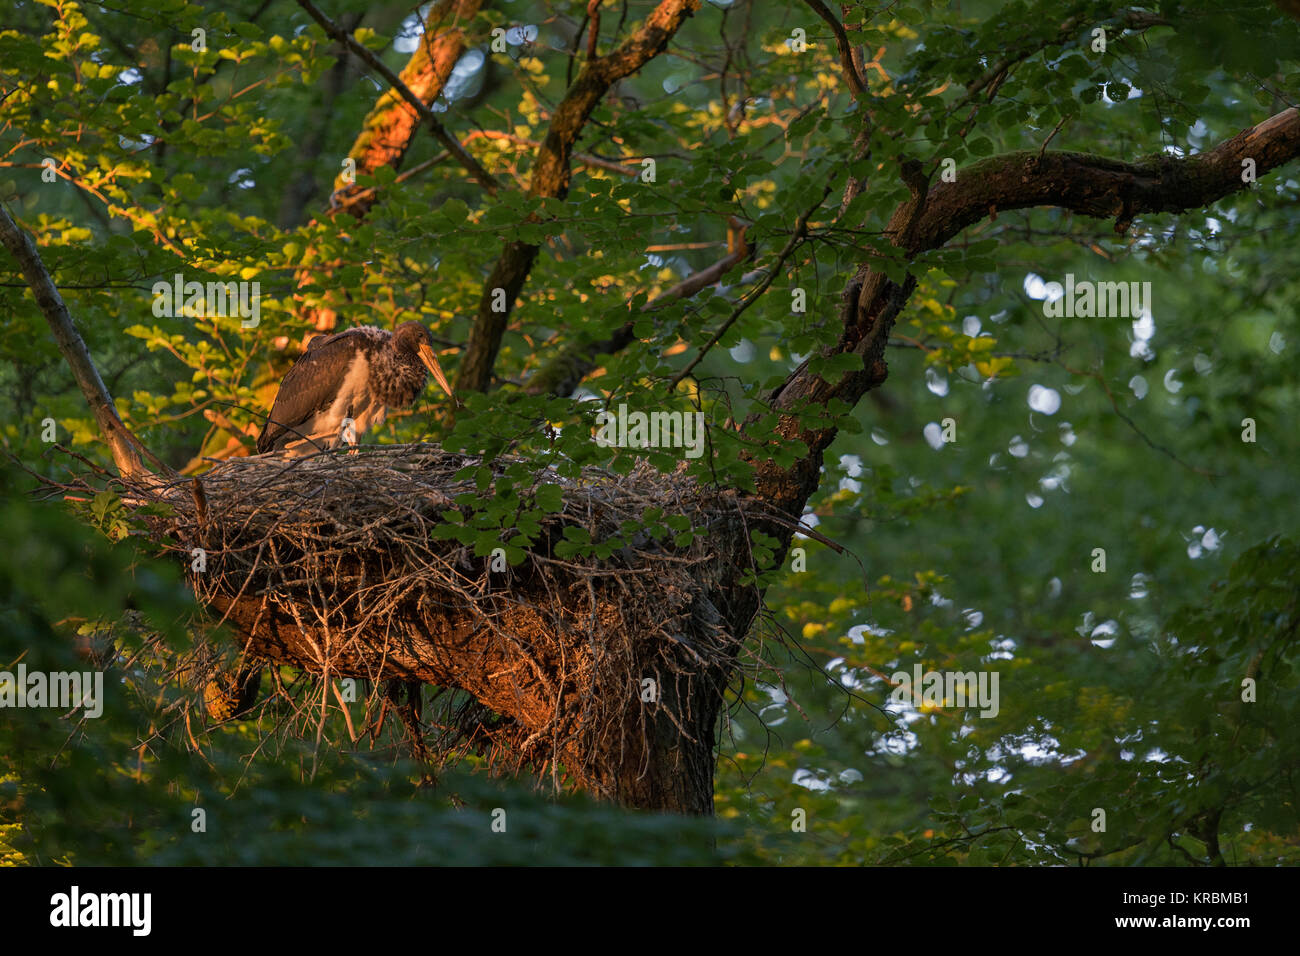 Cicogna Nera ( Ciconia nigra ), cresciuti pulcino, moulting piumaggio, in piedi nel suo nido, nido d'aquila in un bosco di faggi, ultima luce del giorno, l'Europa. Foto Stock